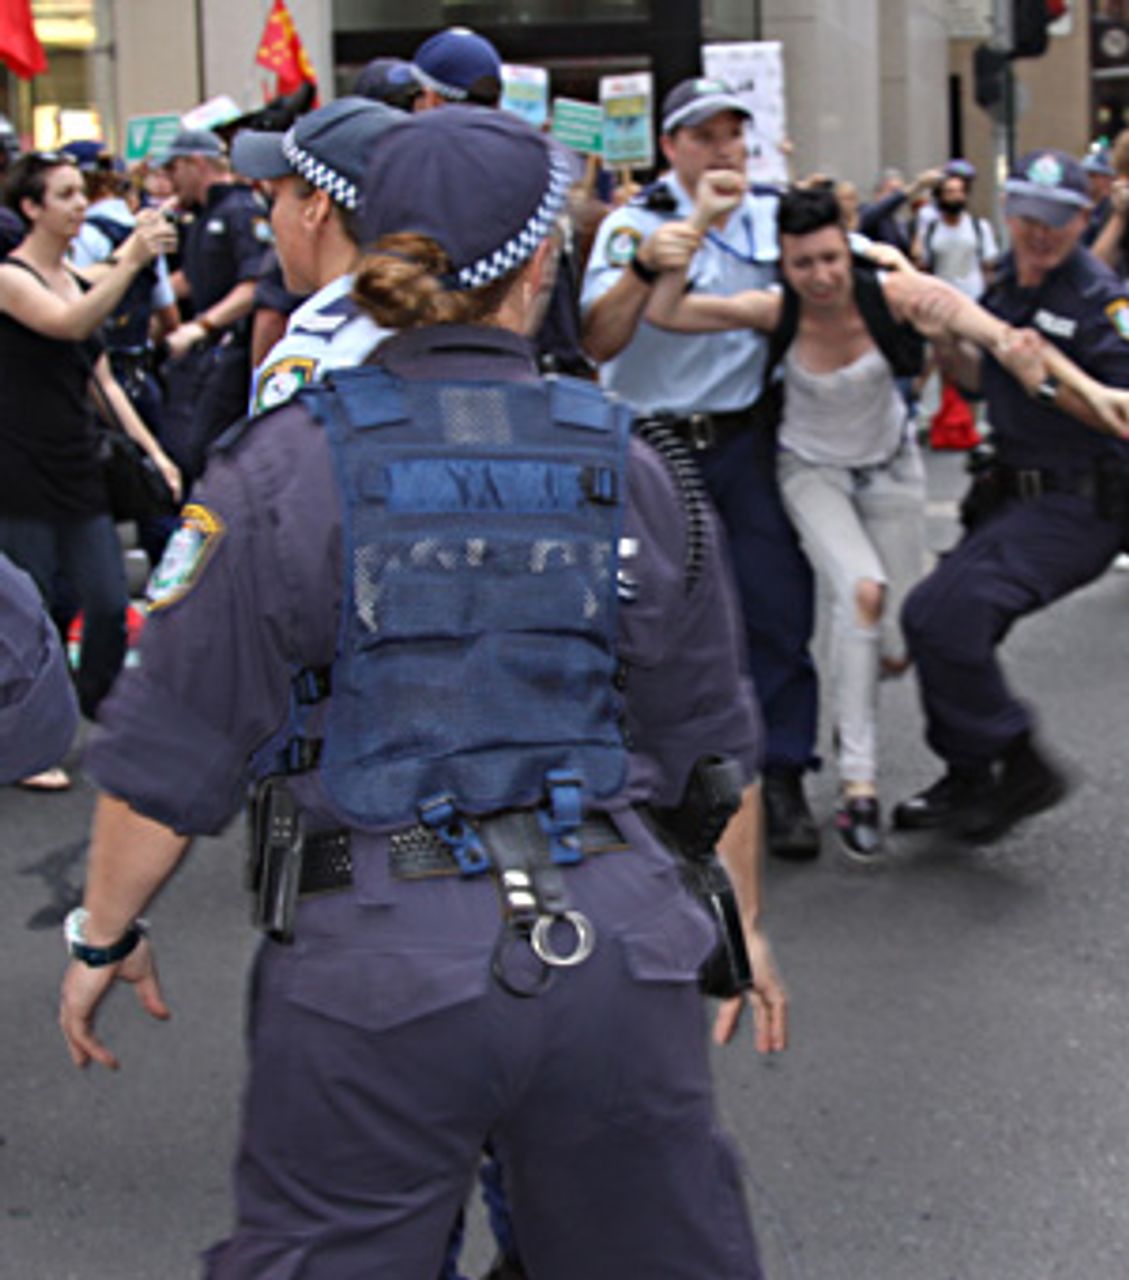 Police arrest protestors